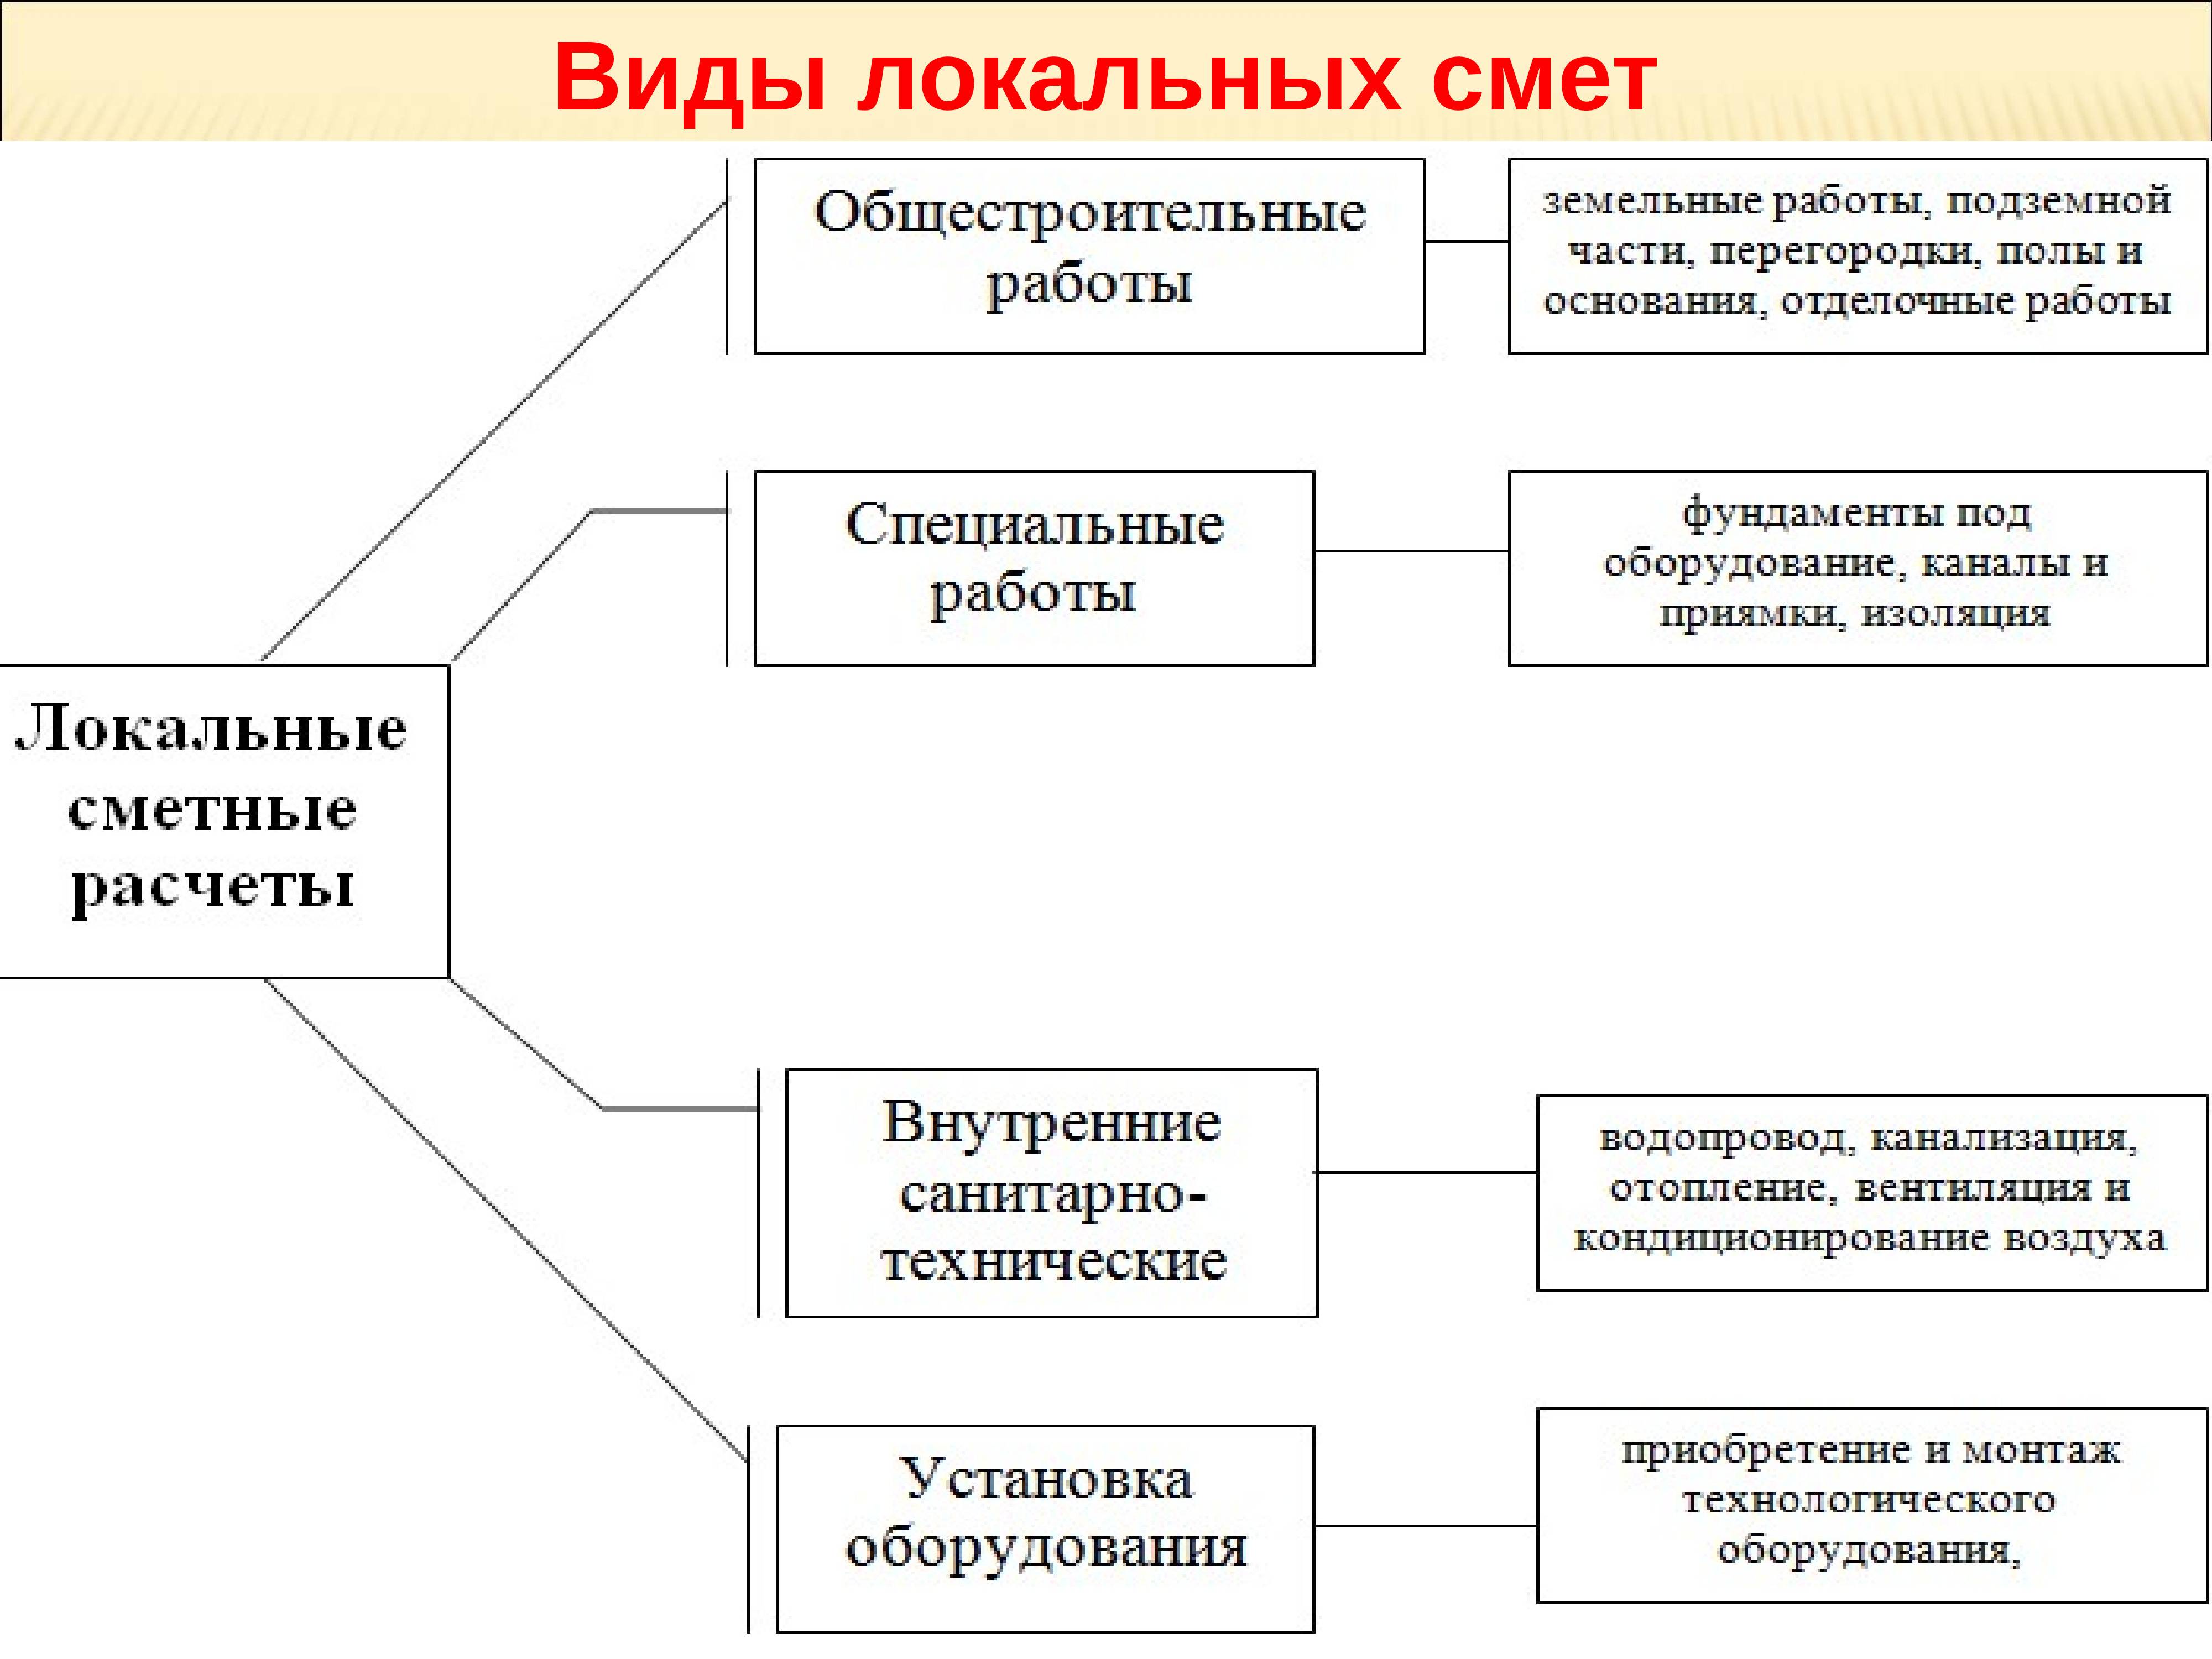 Экспорт сметной документации для прохождения экспертизы в ггэ - документация по программе smeta.ru